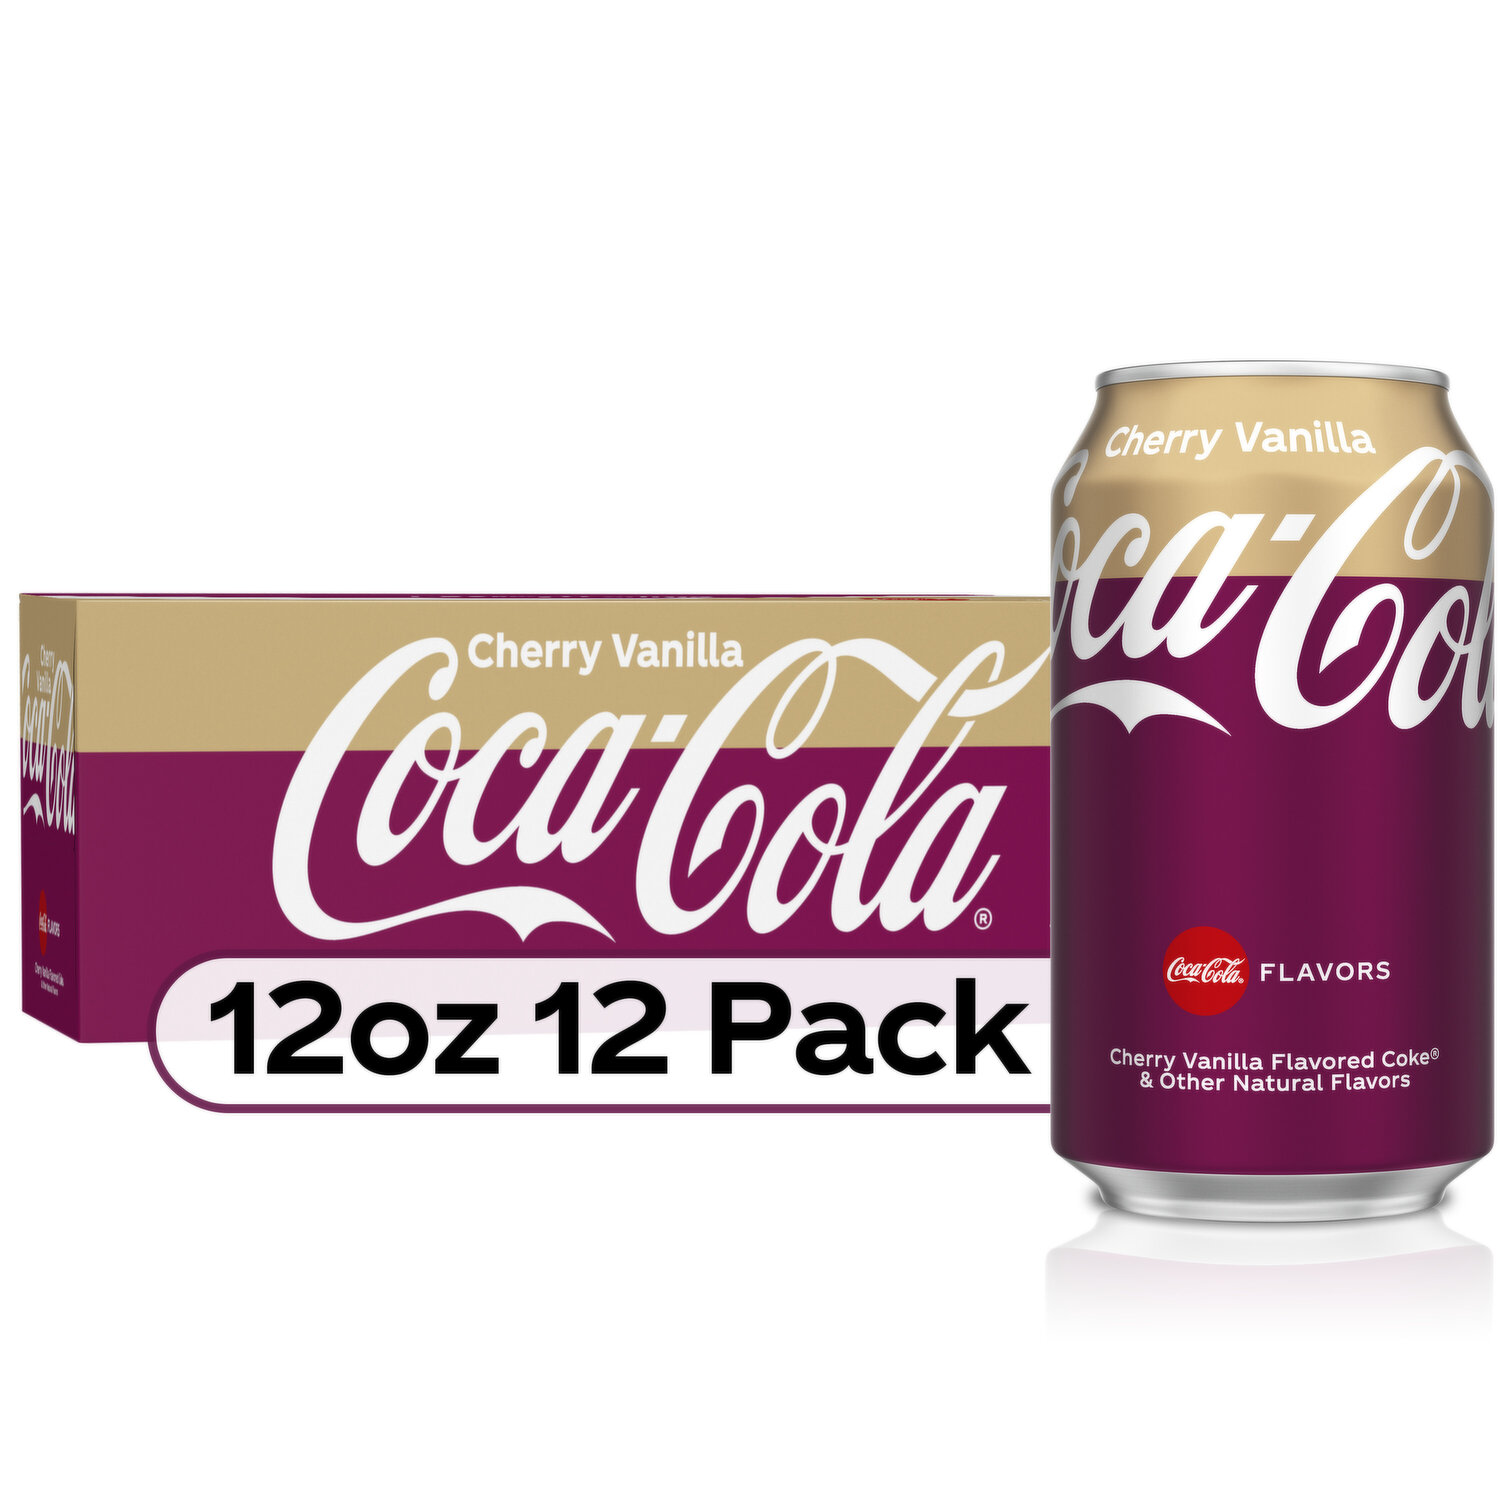 Fanta® Grape Caffeine Free Soda Cans LIMIT OF 10, 12 pk / 12 fl oz